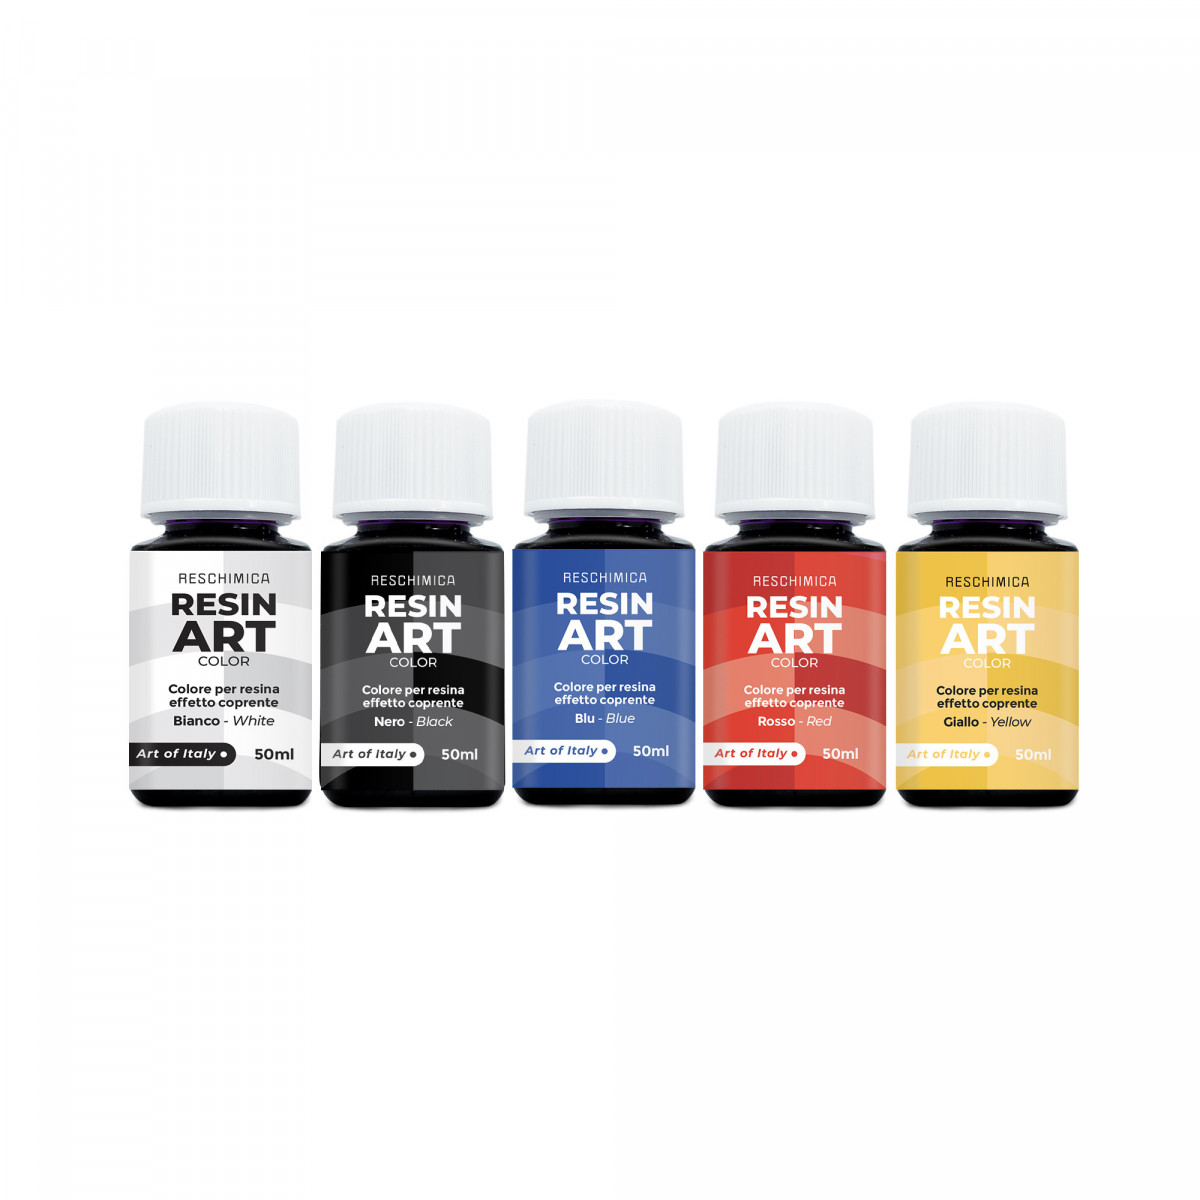 RESIN ART COLOR - Intensive und brillante Farben für Kunstharz in 5 Farben von 50ml (Deckungseffekt)
 Verpackung-Kompletter Bausatz